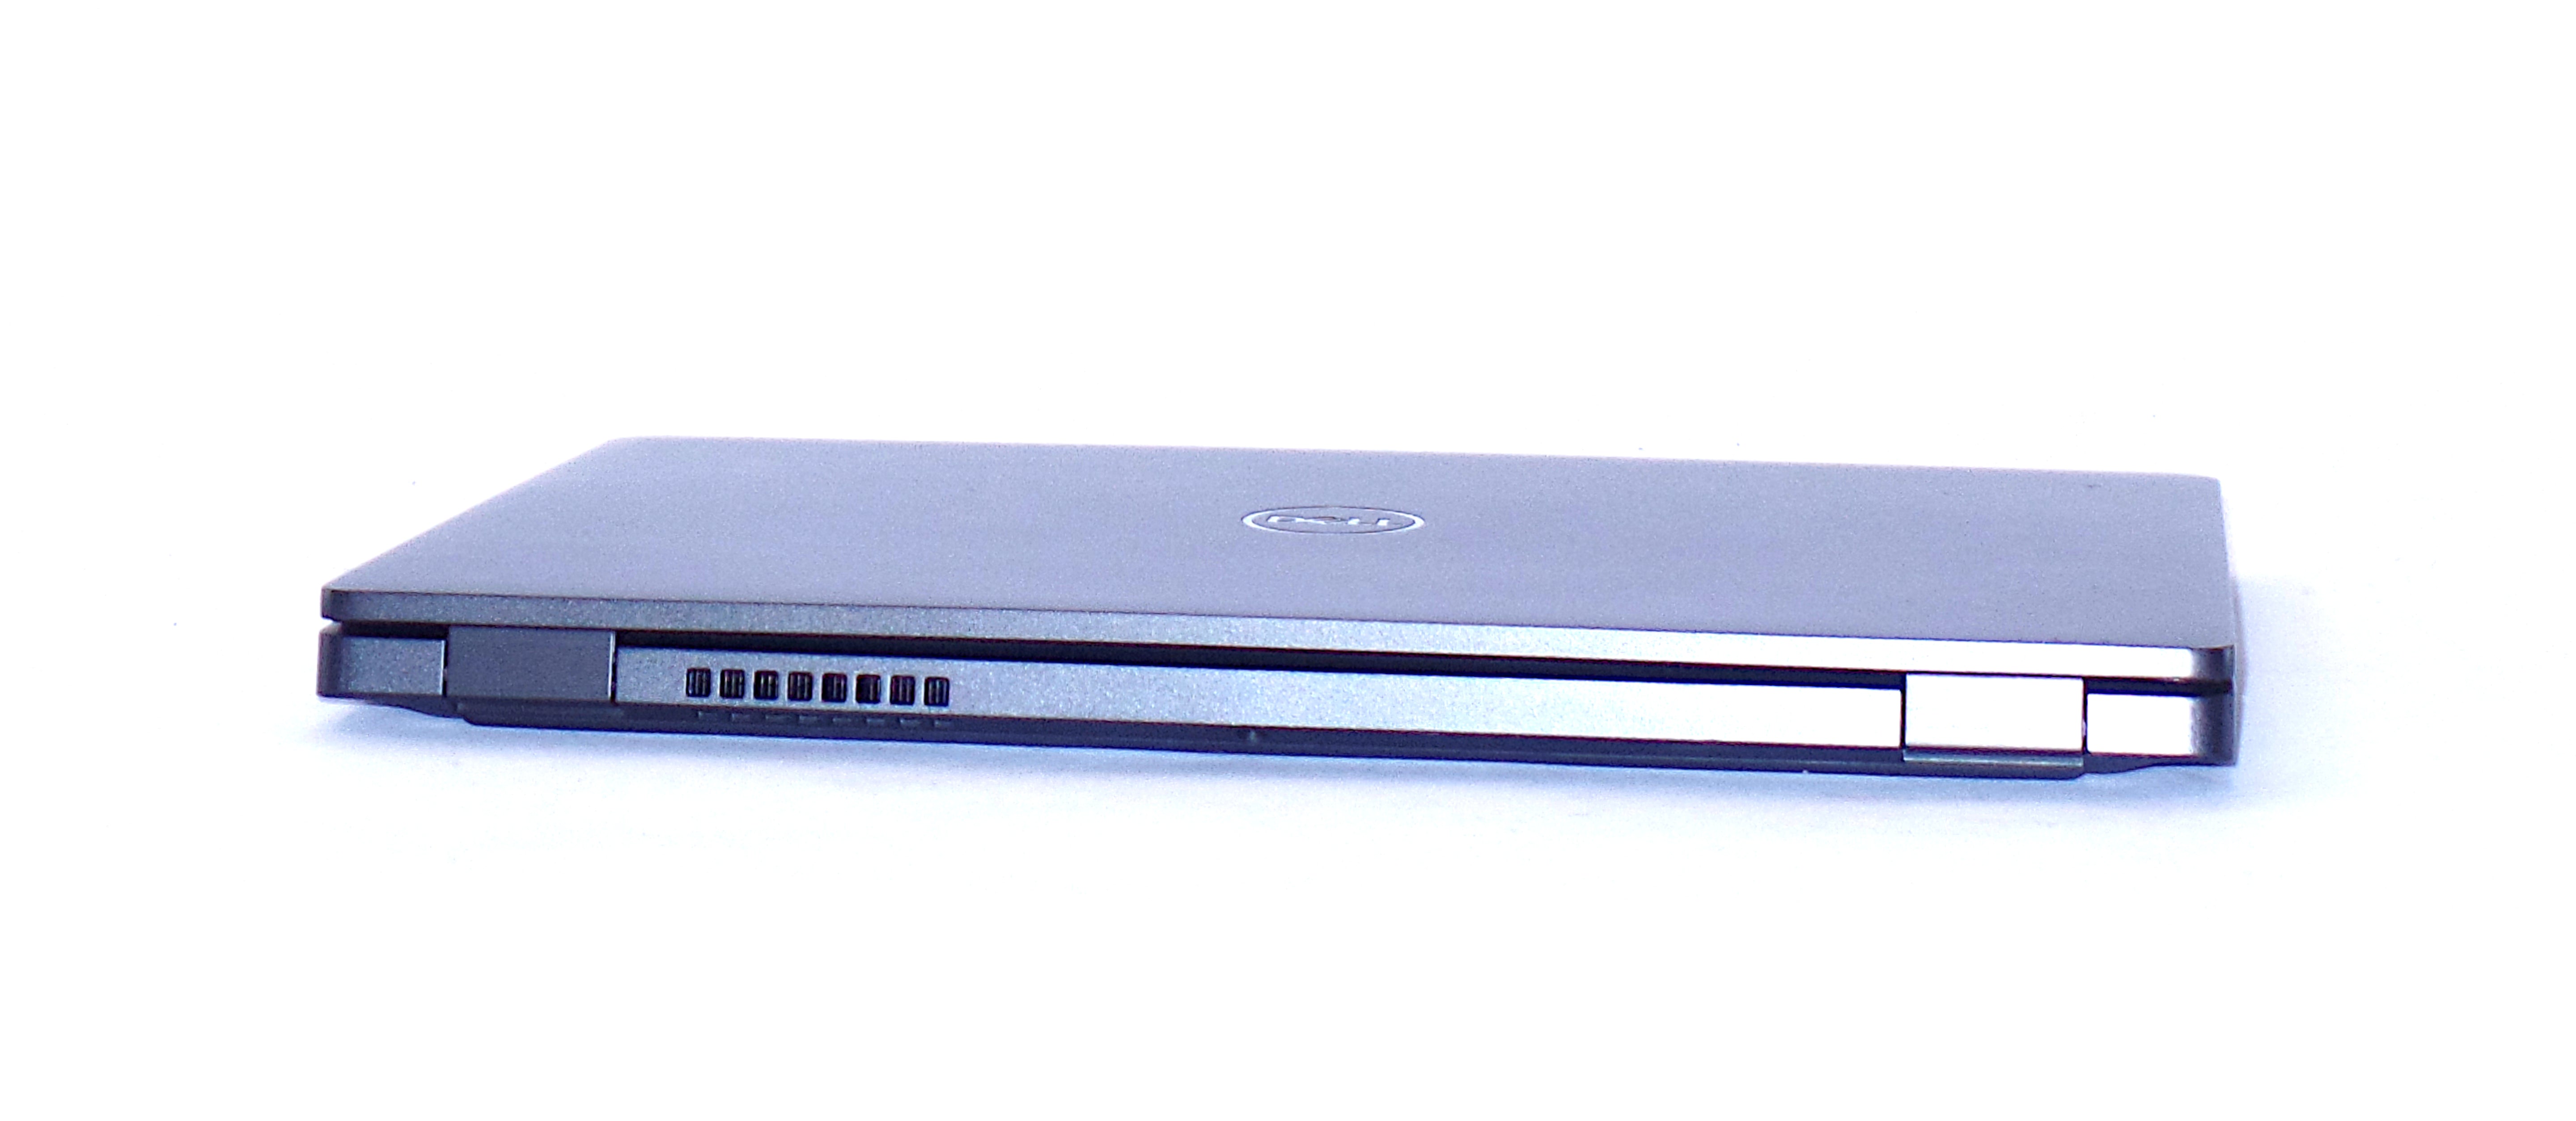 Dell Latitude 5300 Laptop, 13.2" Core i5 8th Gen, 8GB RAM, 256GB SSD